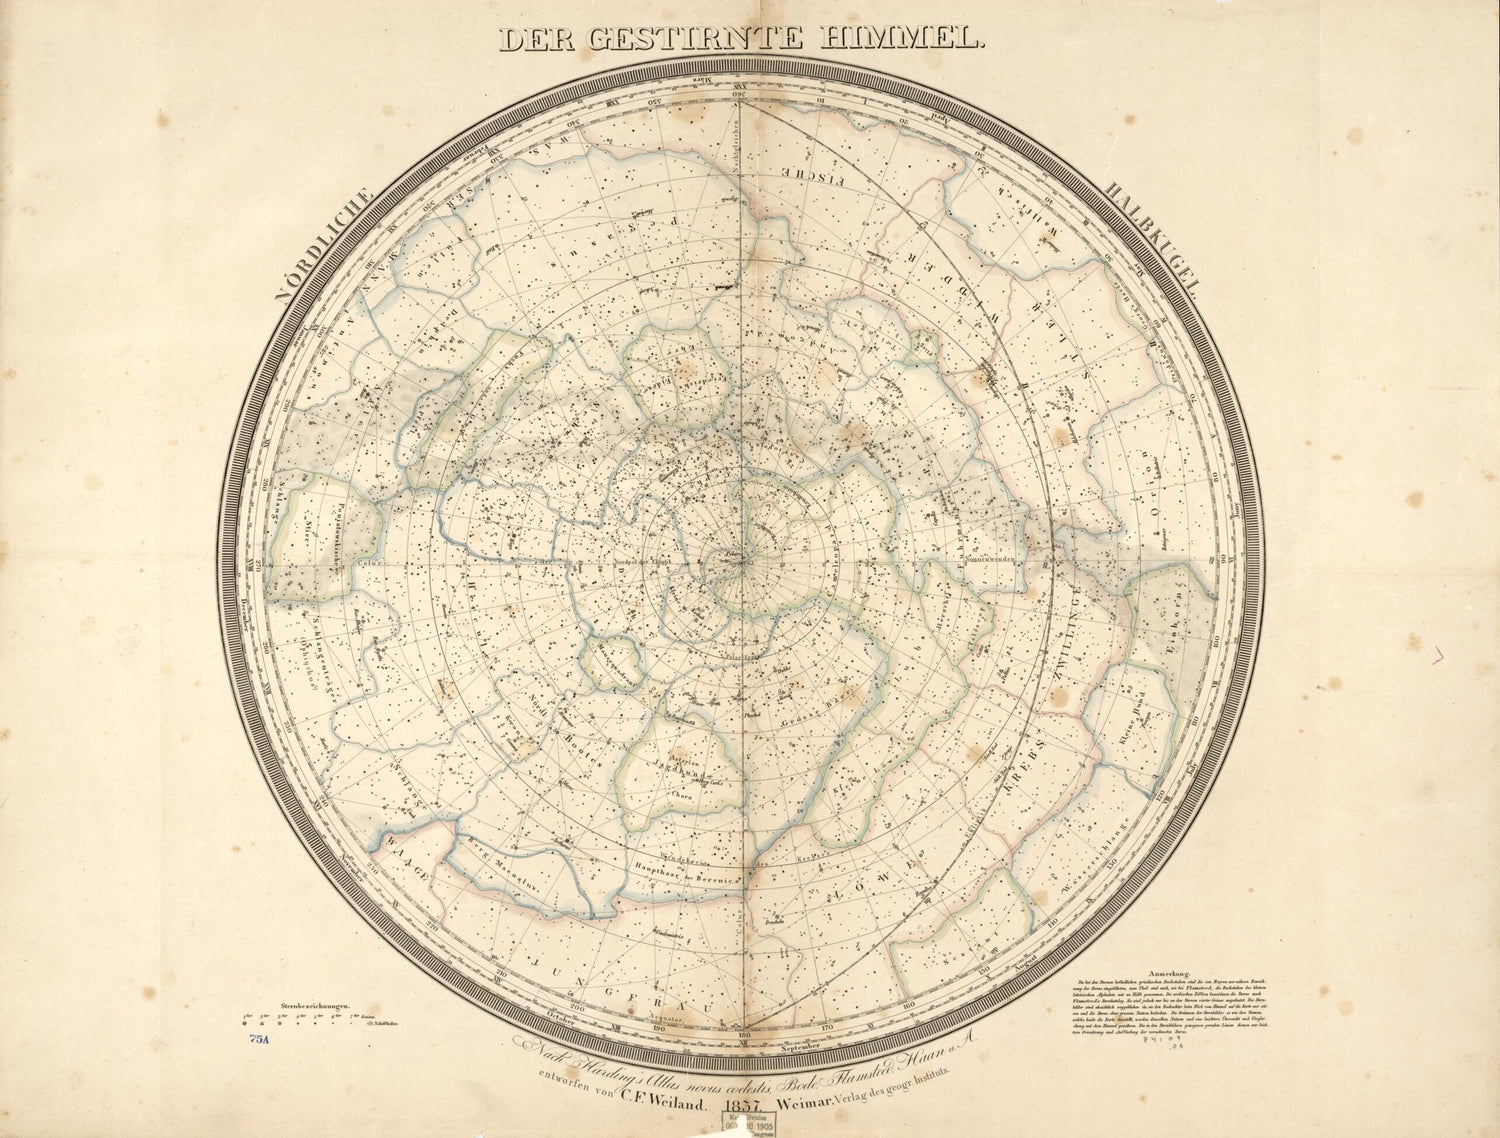 This old map of Der Gestirnte Himmel : Nördliche Halbkugel (Nördliche Halbkugel) from 1837 was created by Thuringia Geographisches Institut (Weimar, C. F. (Carl Ferdinand) Weiland in 1837